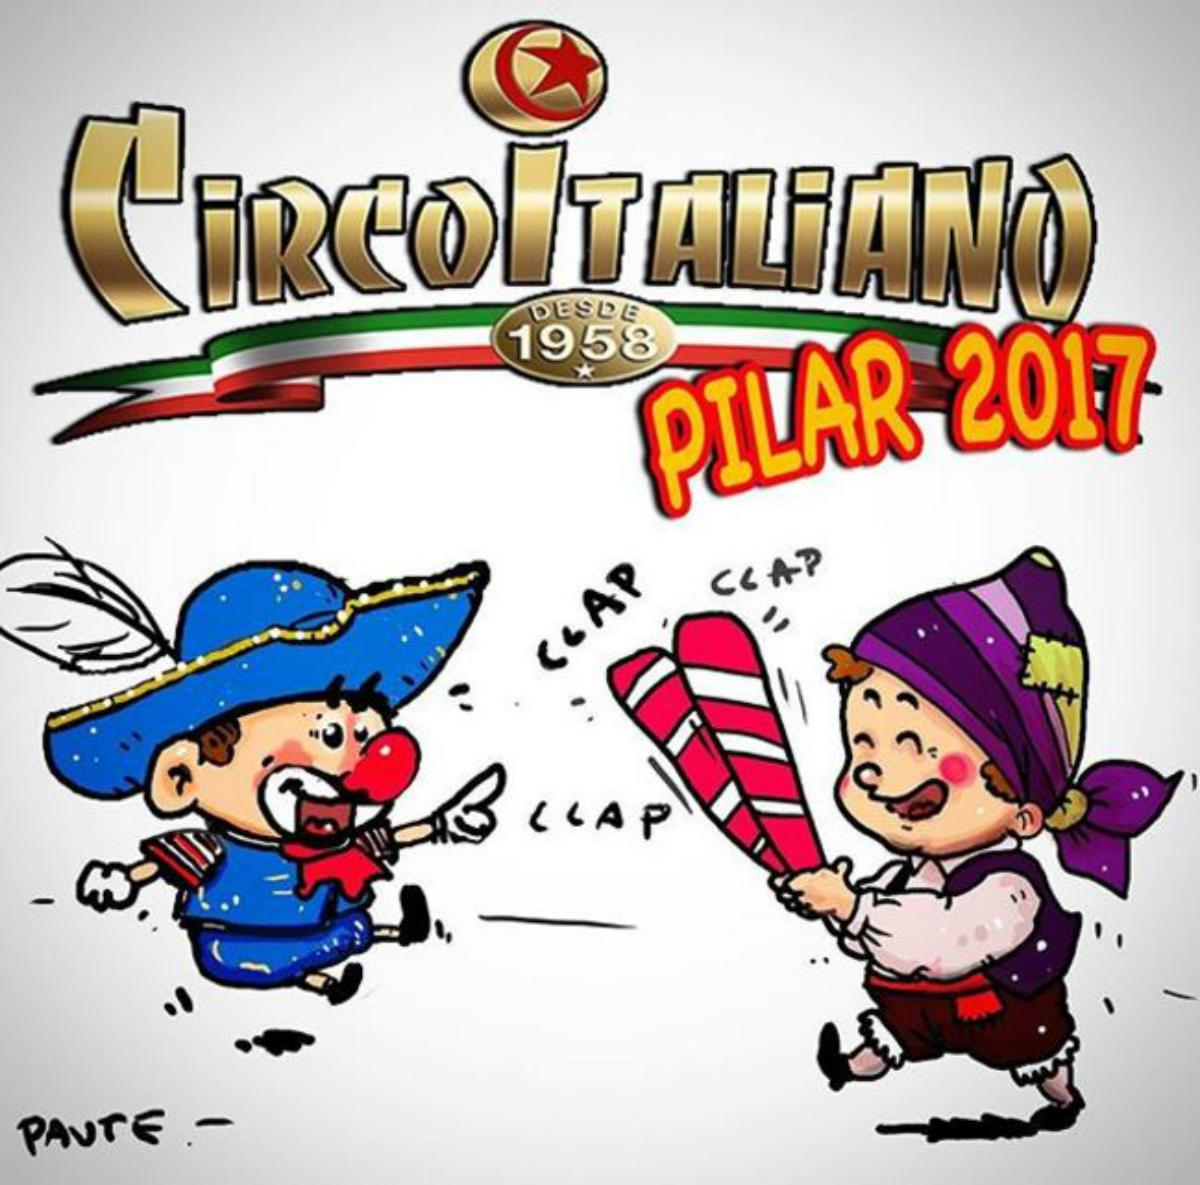  Circo Italiano vuelve a las Fiestas del Pilar 2017